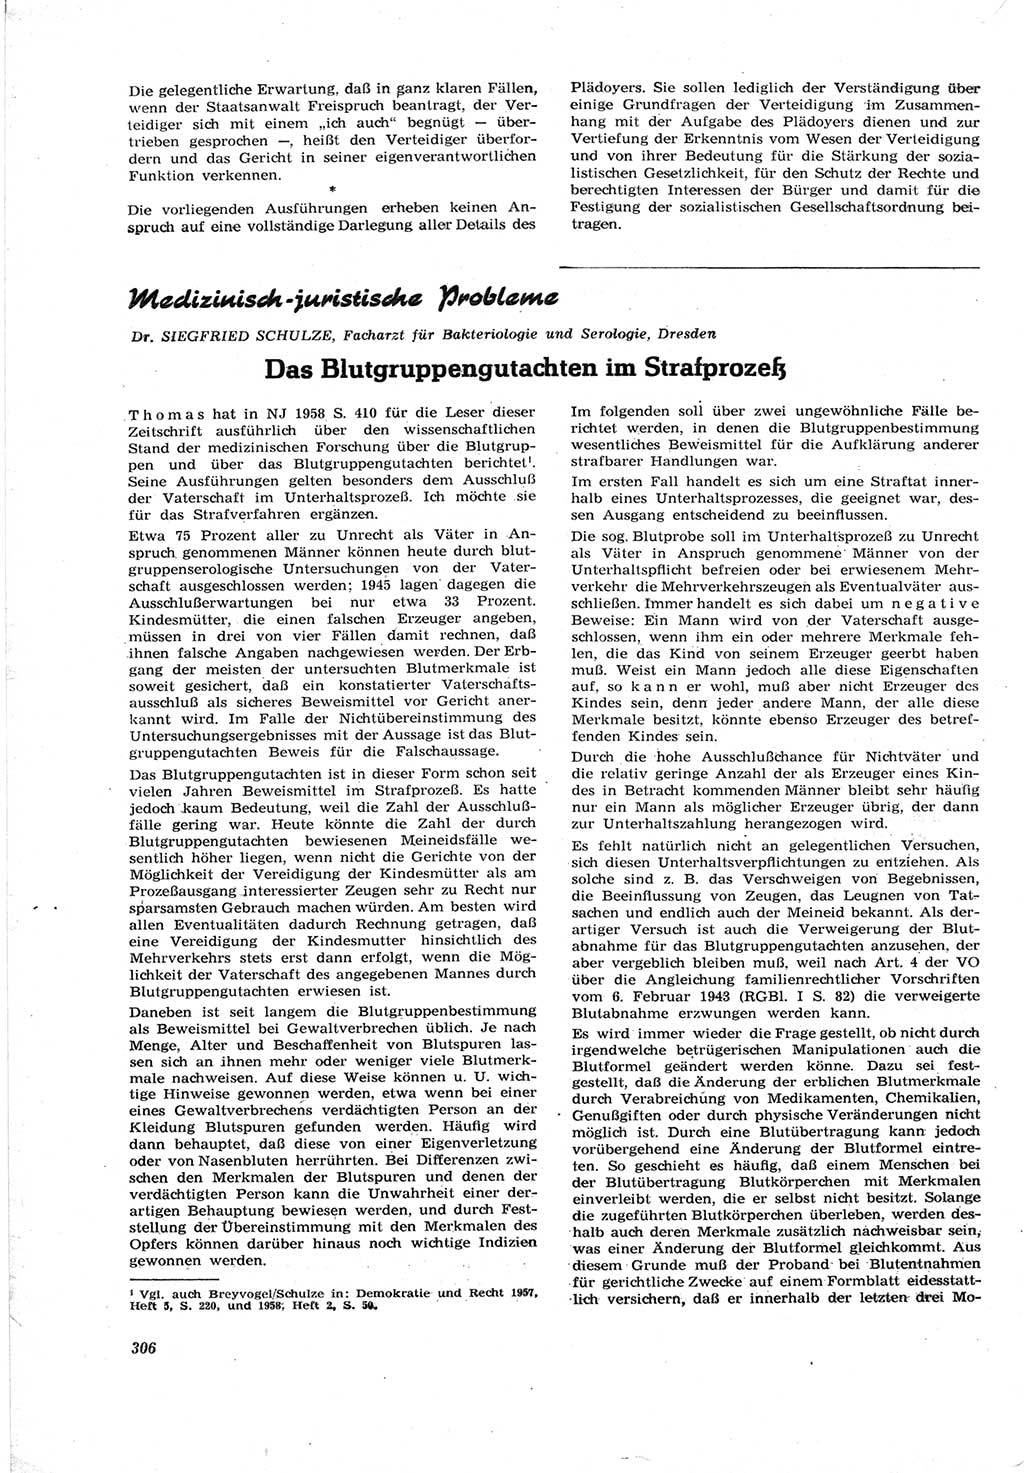 Neue Justiz (NJ), Zeitschrift für Recht und Rechtswissenschaft [Deutsche Demokratische Republik (DDR)], 17. Jahrgang 1963, Seite 306 (NJ DDR 1963, S. 306)